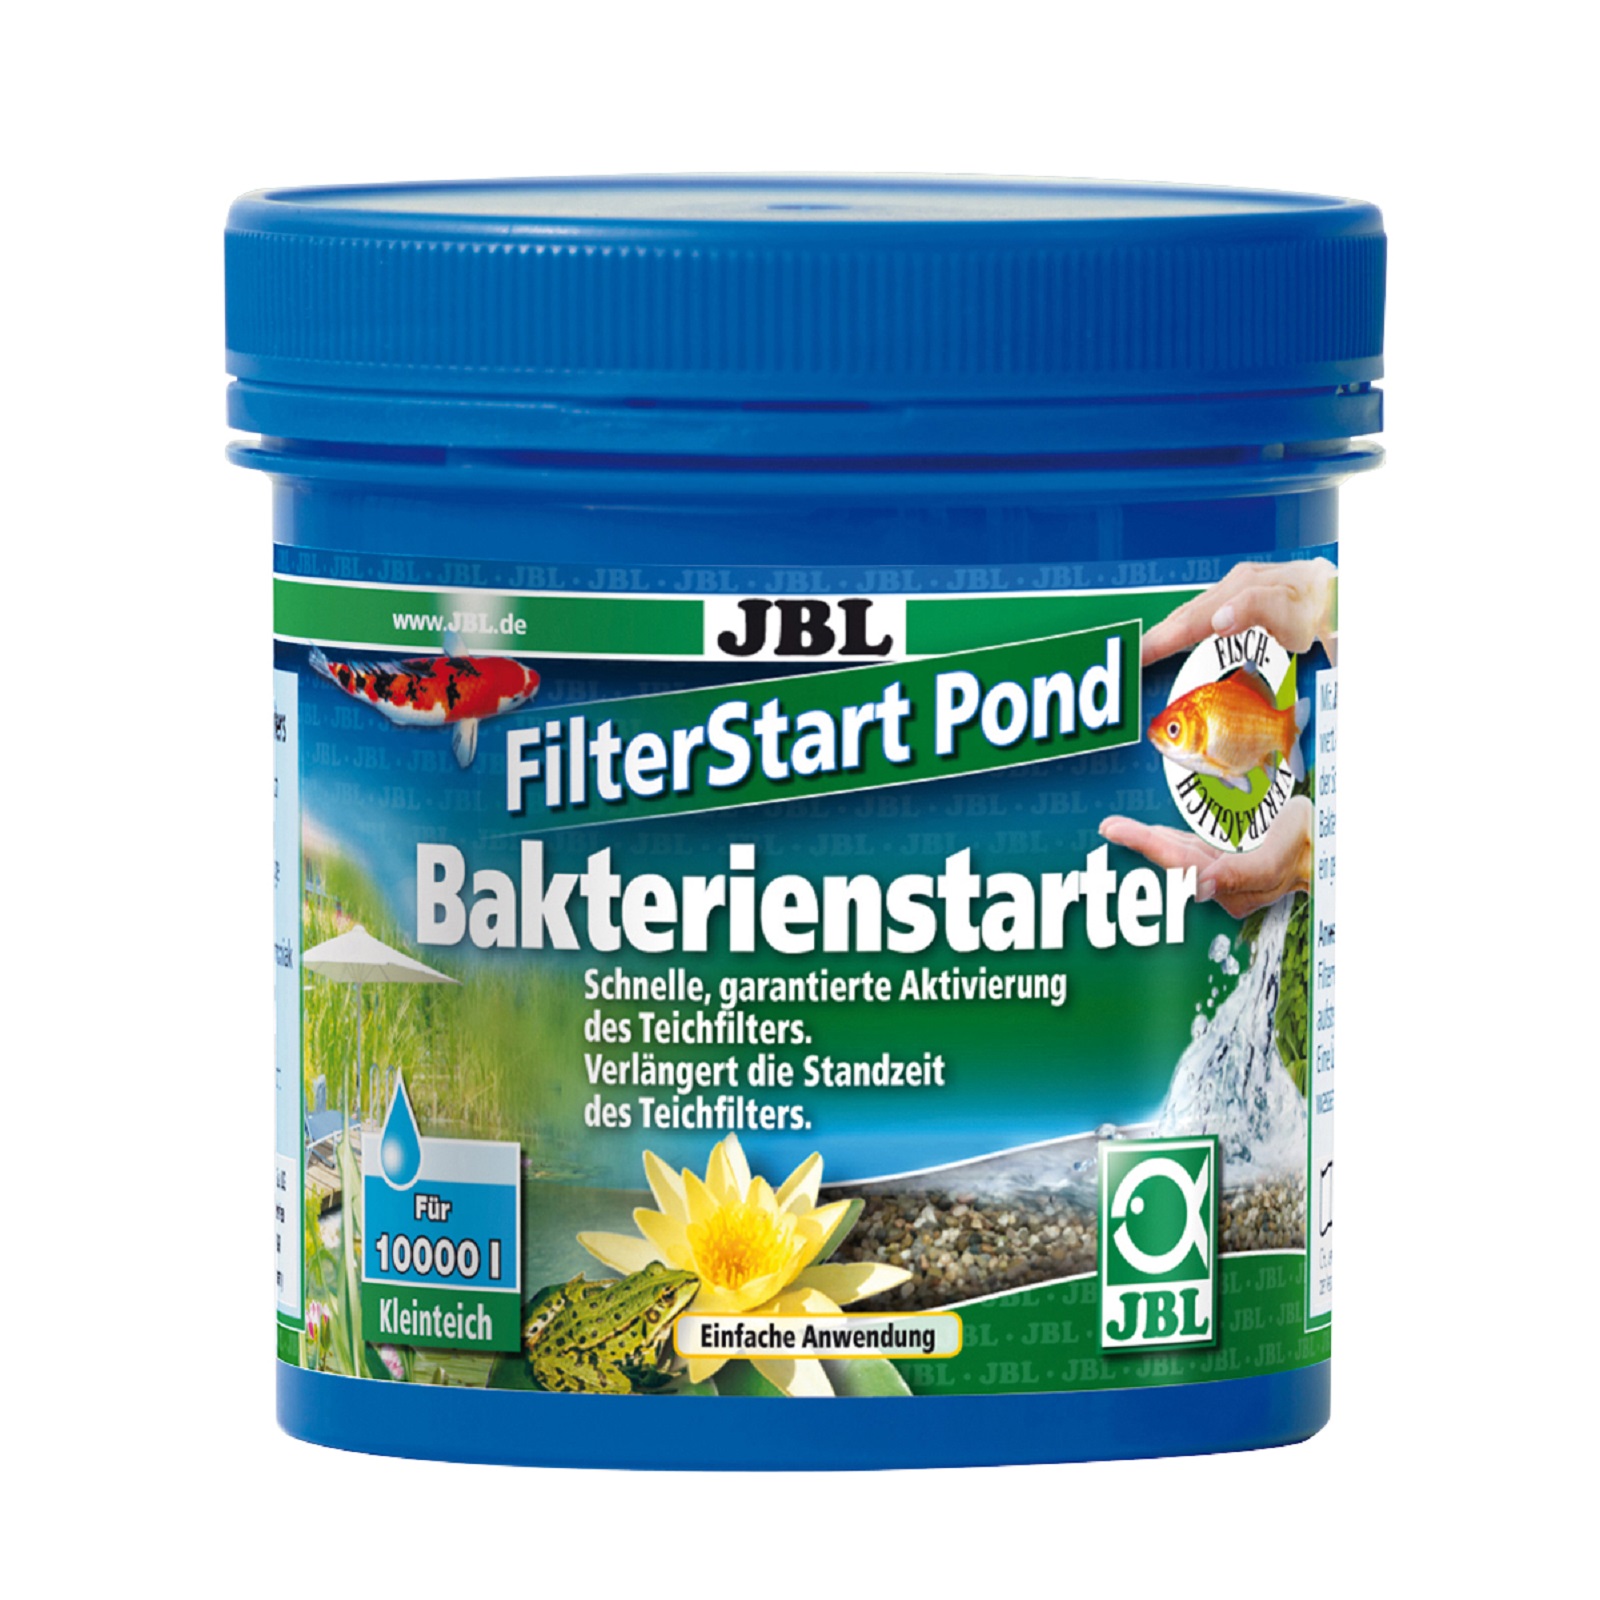 JBL FilterStart Pond  Bakterienstarter für Teichfilter 250 g